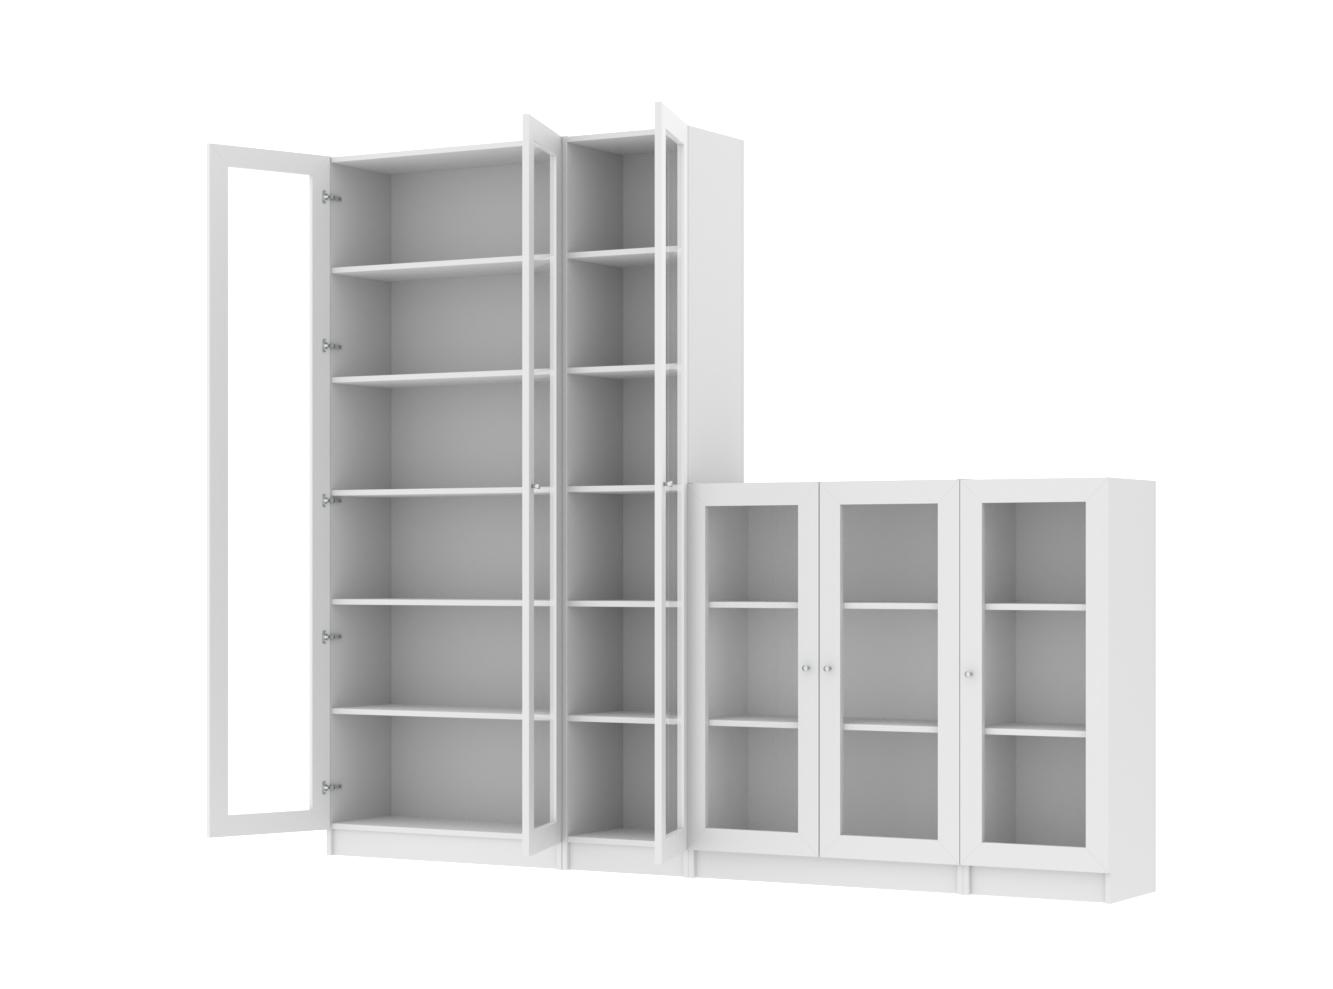  Книжный шкаф Билли 413 white ИКЕА (IKEA) со стеллажом изображение товара